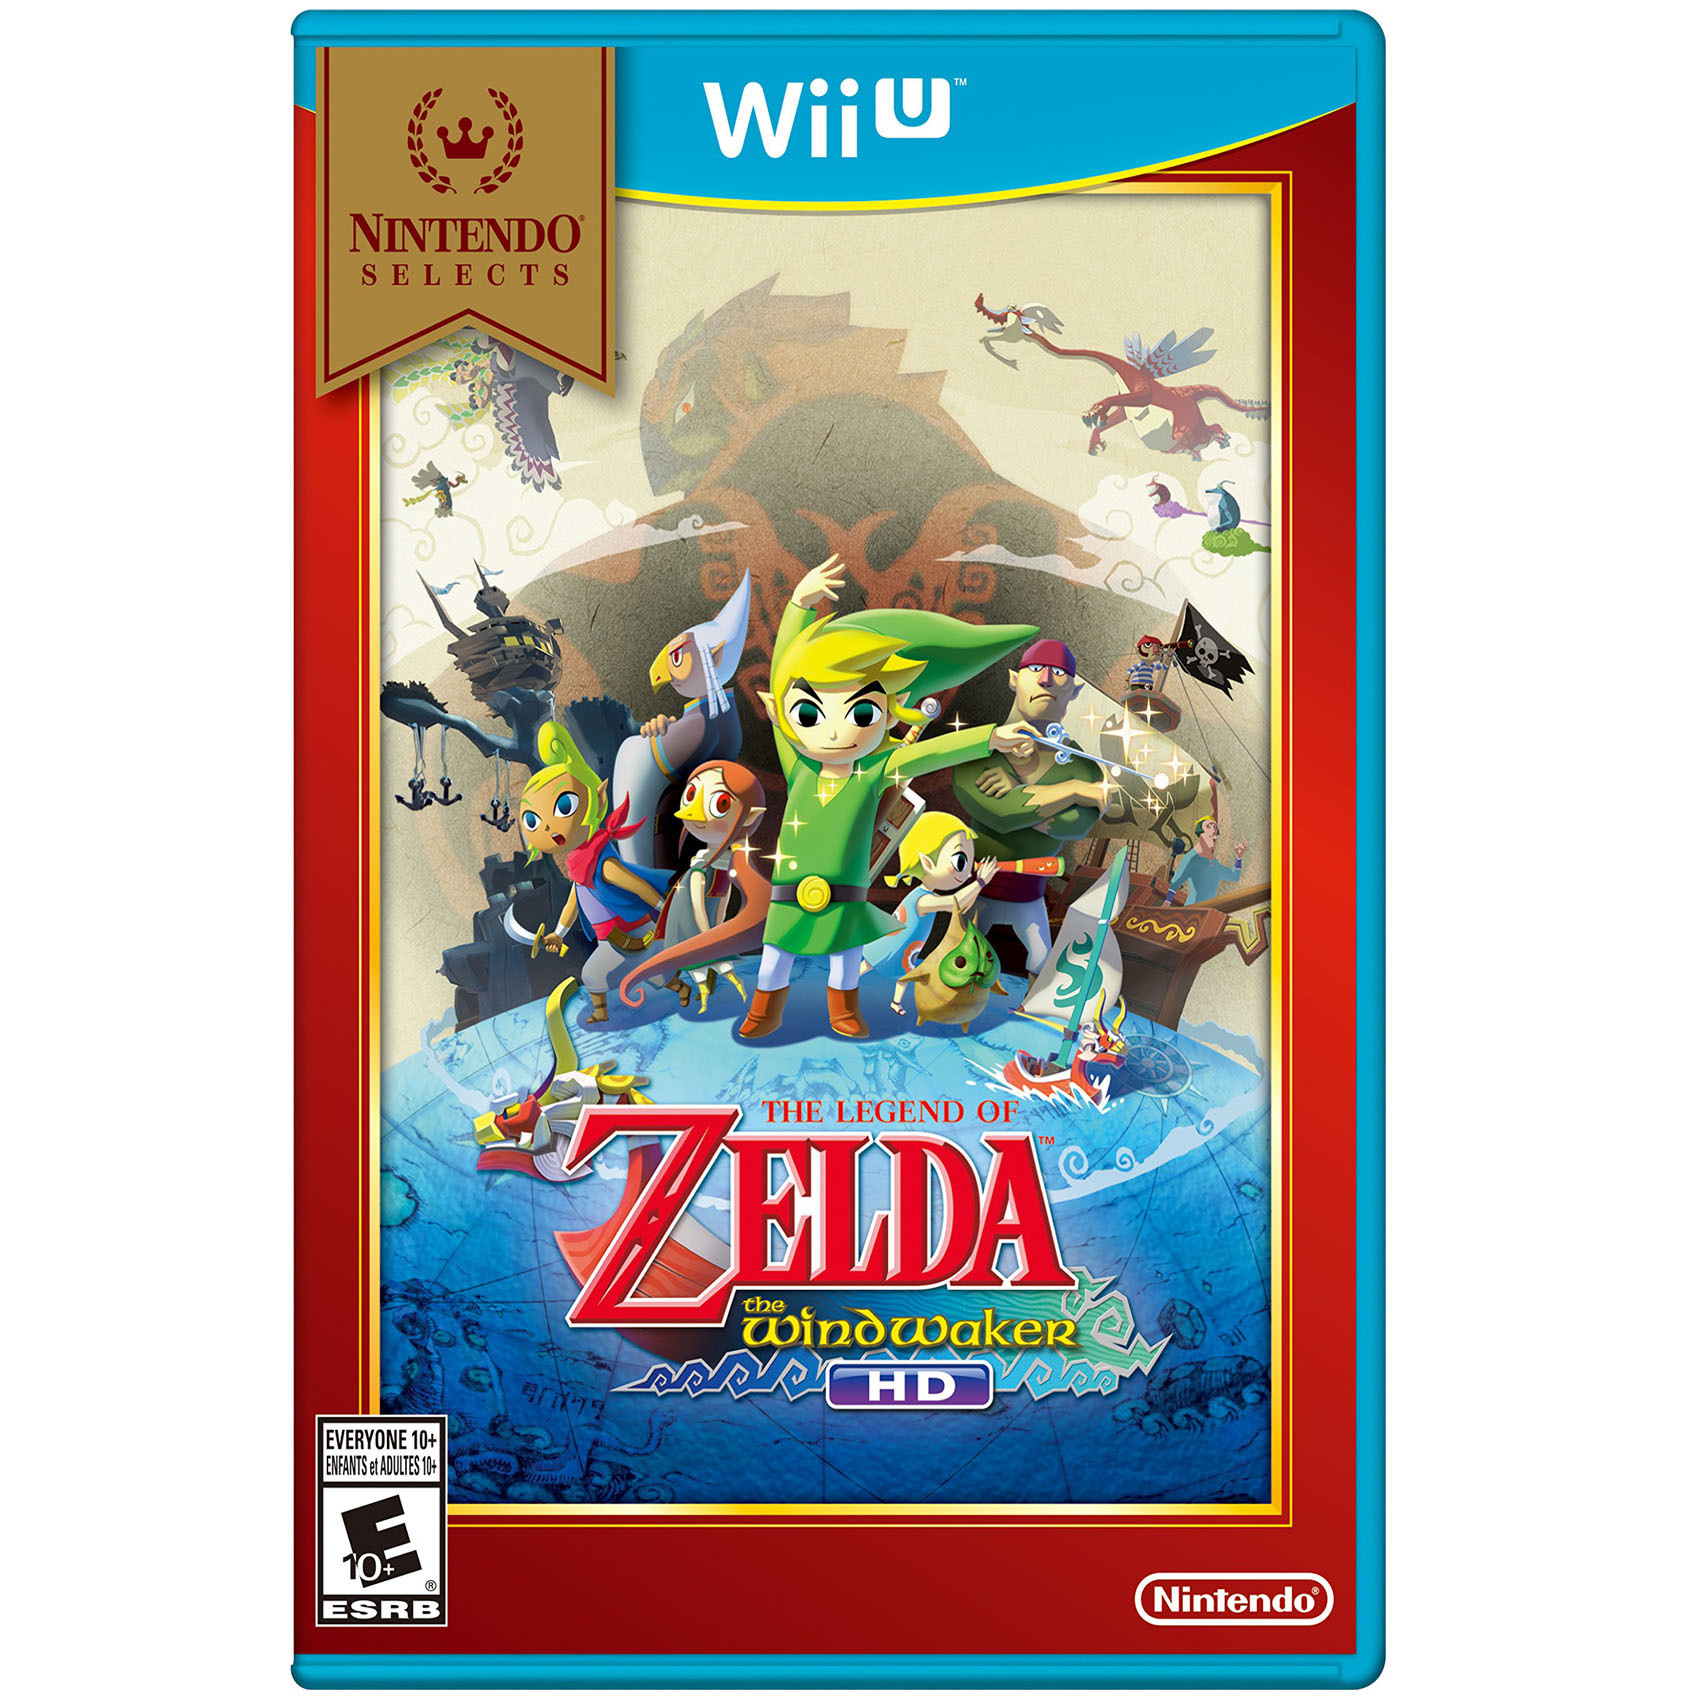 Buy Nintendo Wii U Legend Of Zelda The Wind Walker Hd Online Shop Electronics Appliances On Carrefour Uae